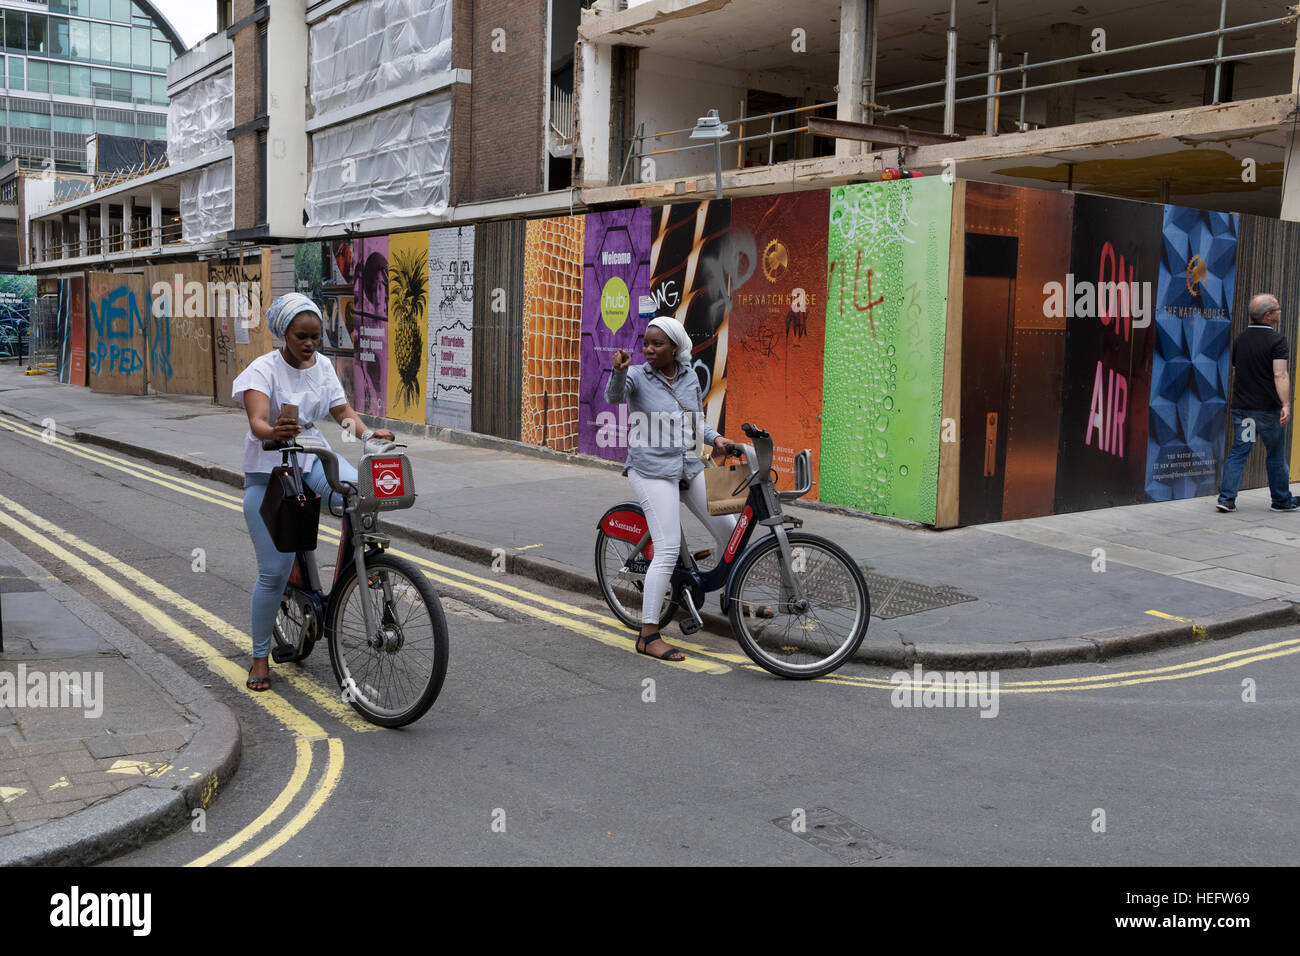 Deux dames s'arrêtent sur loué des vélos dans le quartier londonien de Soho de décider où ils vont ensuite Banque D'Images